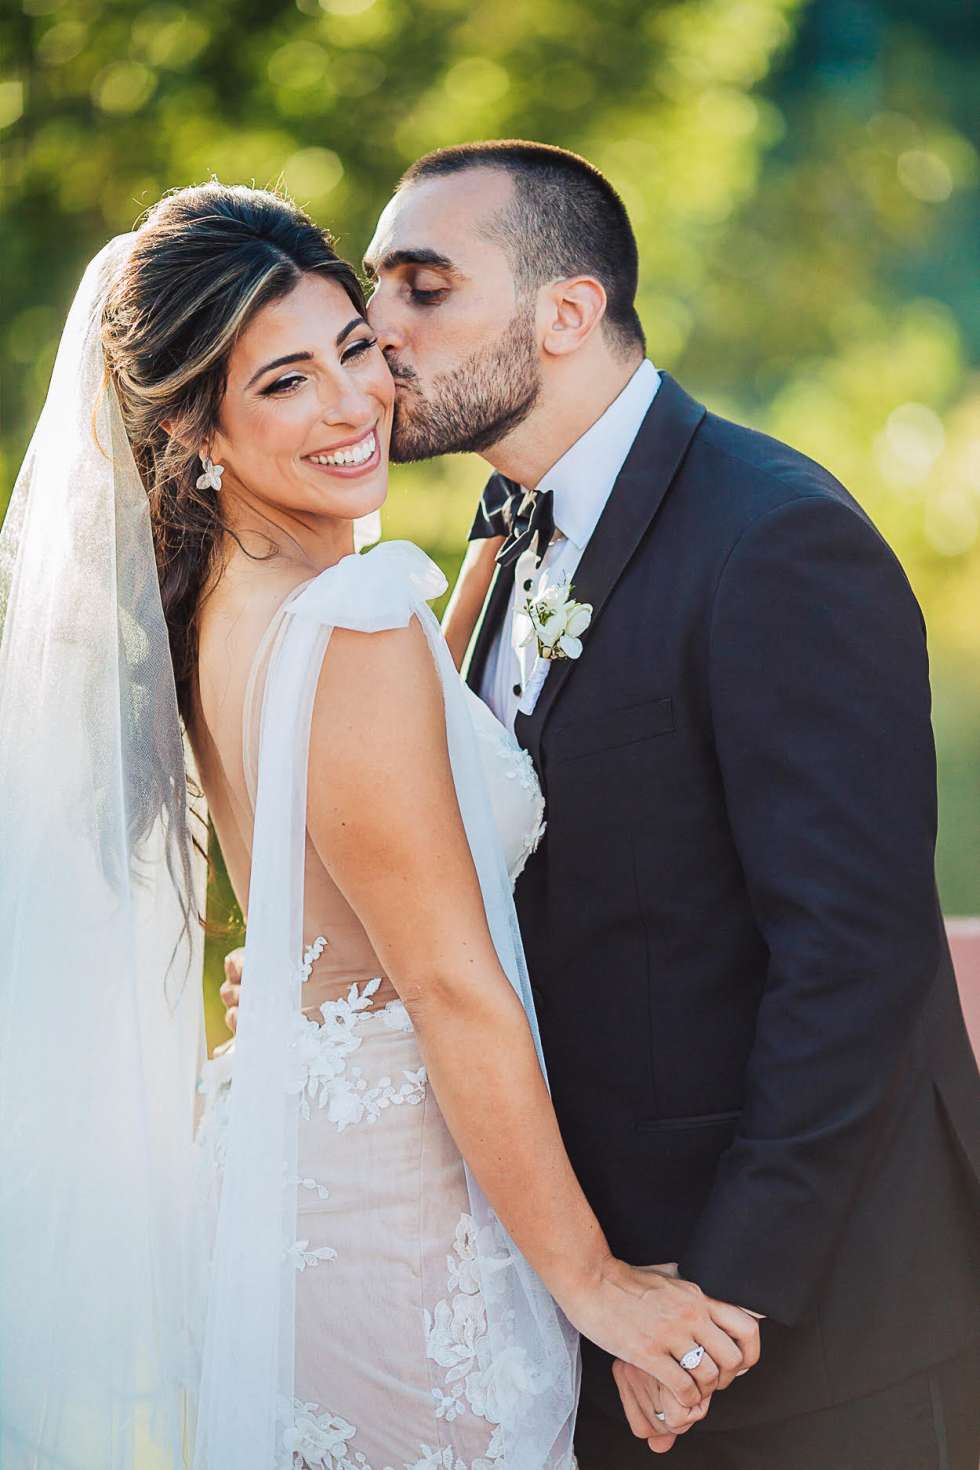 حفل زفاف أرمني ولبناني جميل في البرتغال